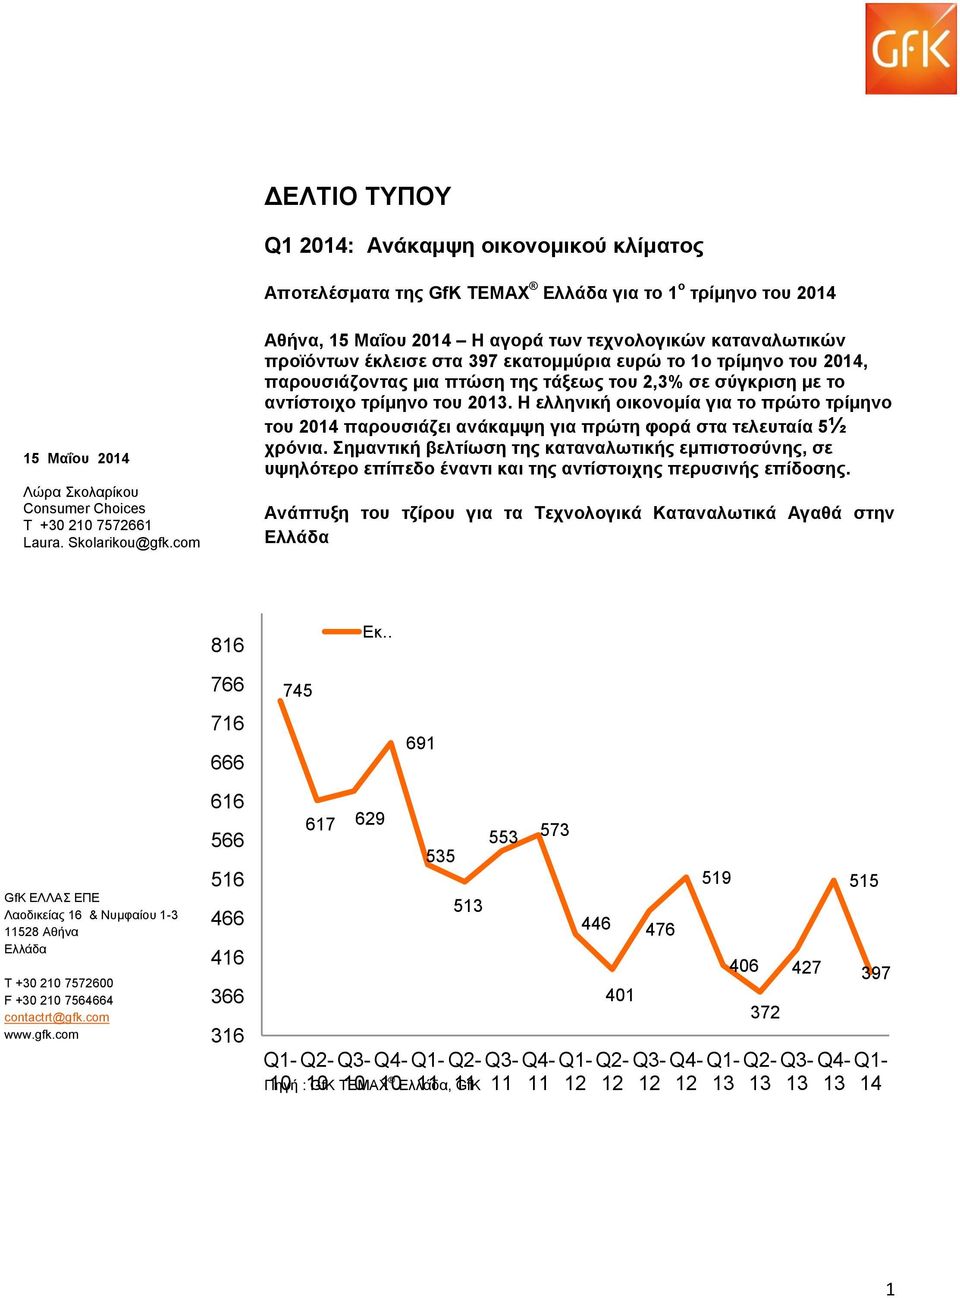 com Αθήνα, 15 Μαΐου 2014 Η αγορά των τεχνολογικών καταναλωτικών προϊόντων έκλεισε στα 397 εκατομμύρια ευρώ το 1ο τρίμηνο του 2014, παρουσιάζοντας μια πτώση της τάξεως του 2,3% σε σύγκριση με το